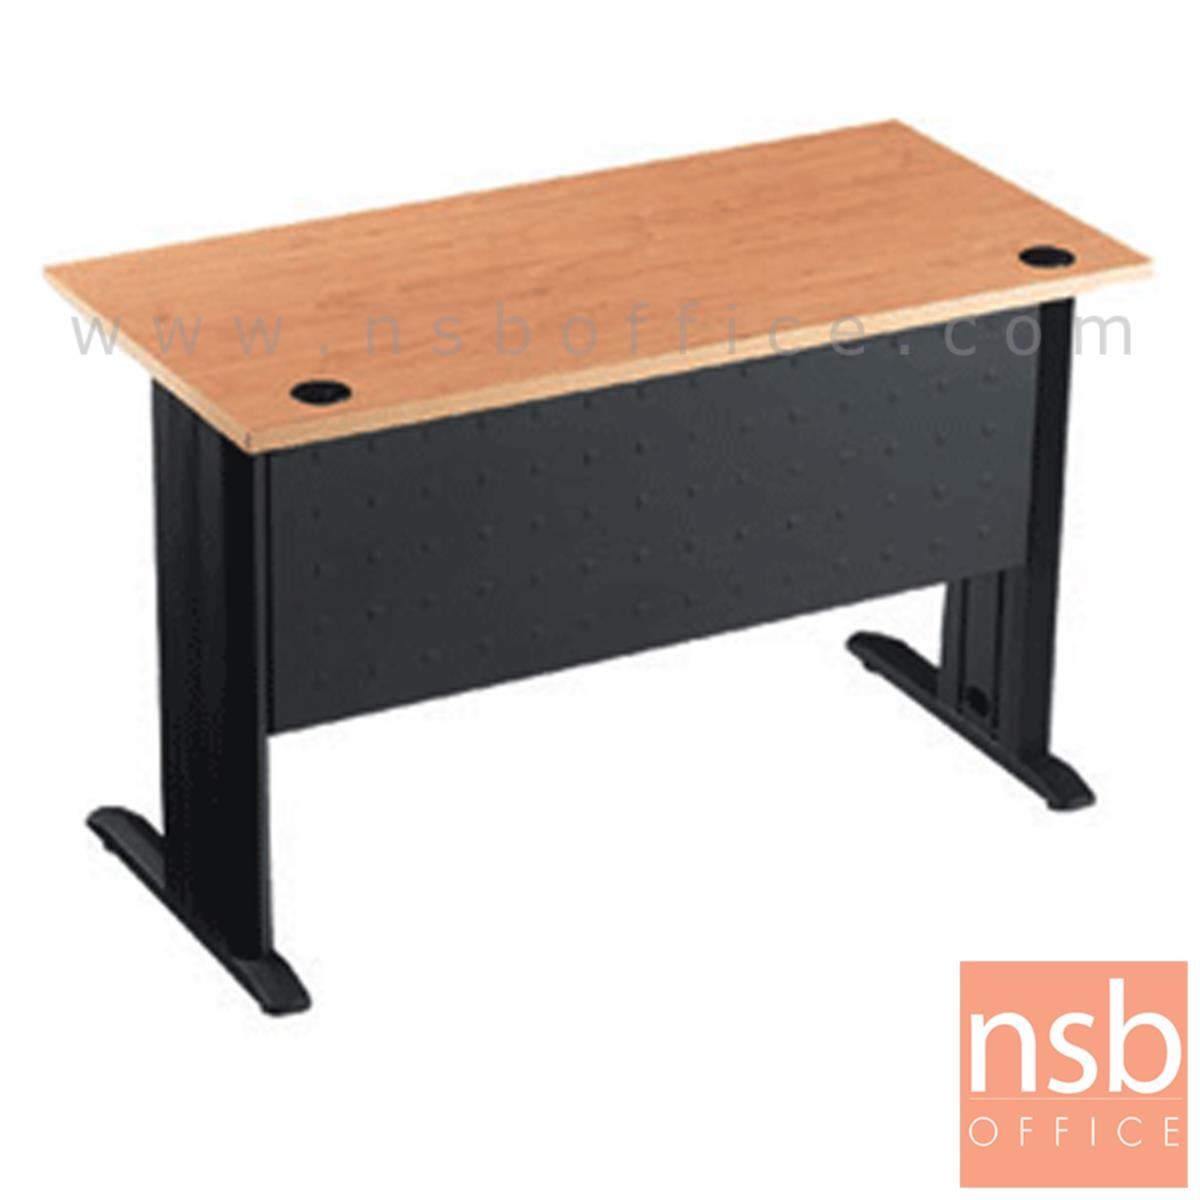 โต๊ะทำงาน ขนาด 120W*75H cm. บังโป้เหล็ก รุ่น S-DK-0021  ขาเหล็กตัวแอลสีดำ